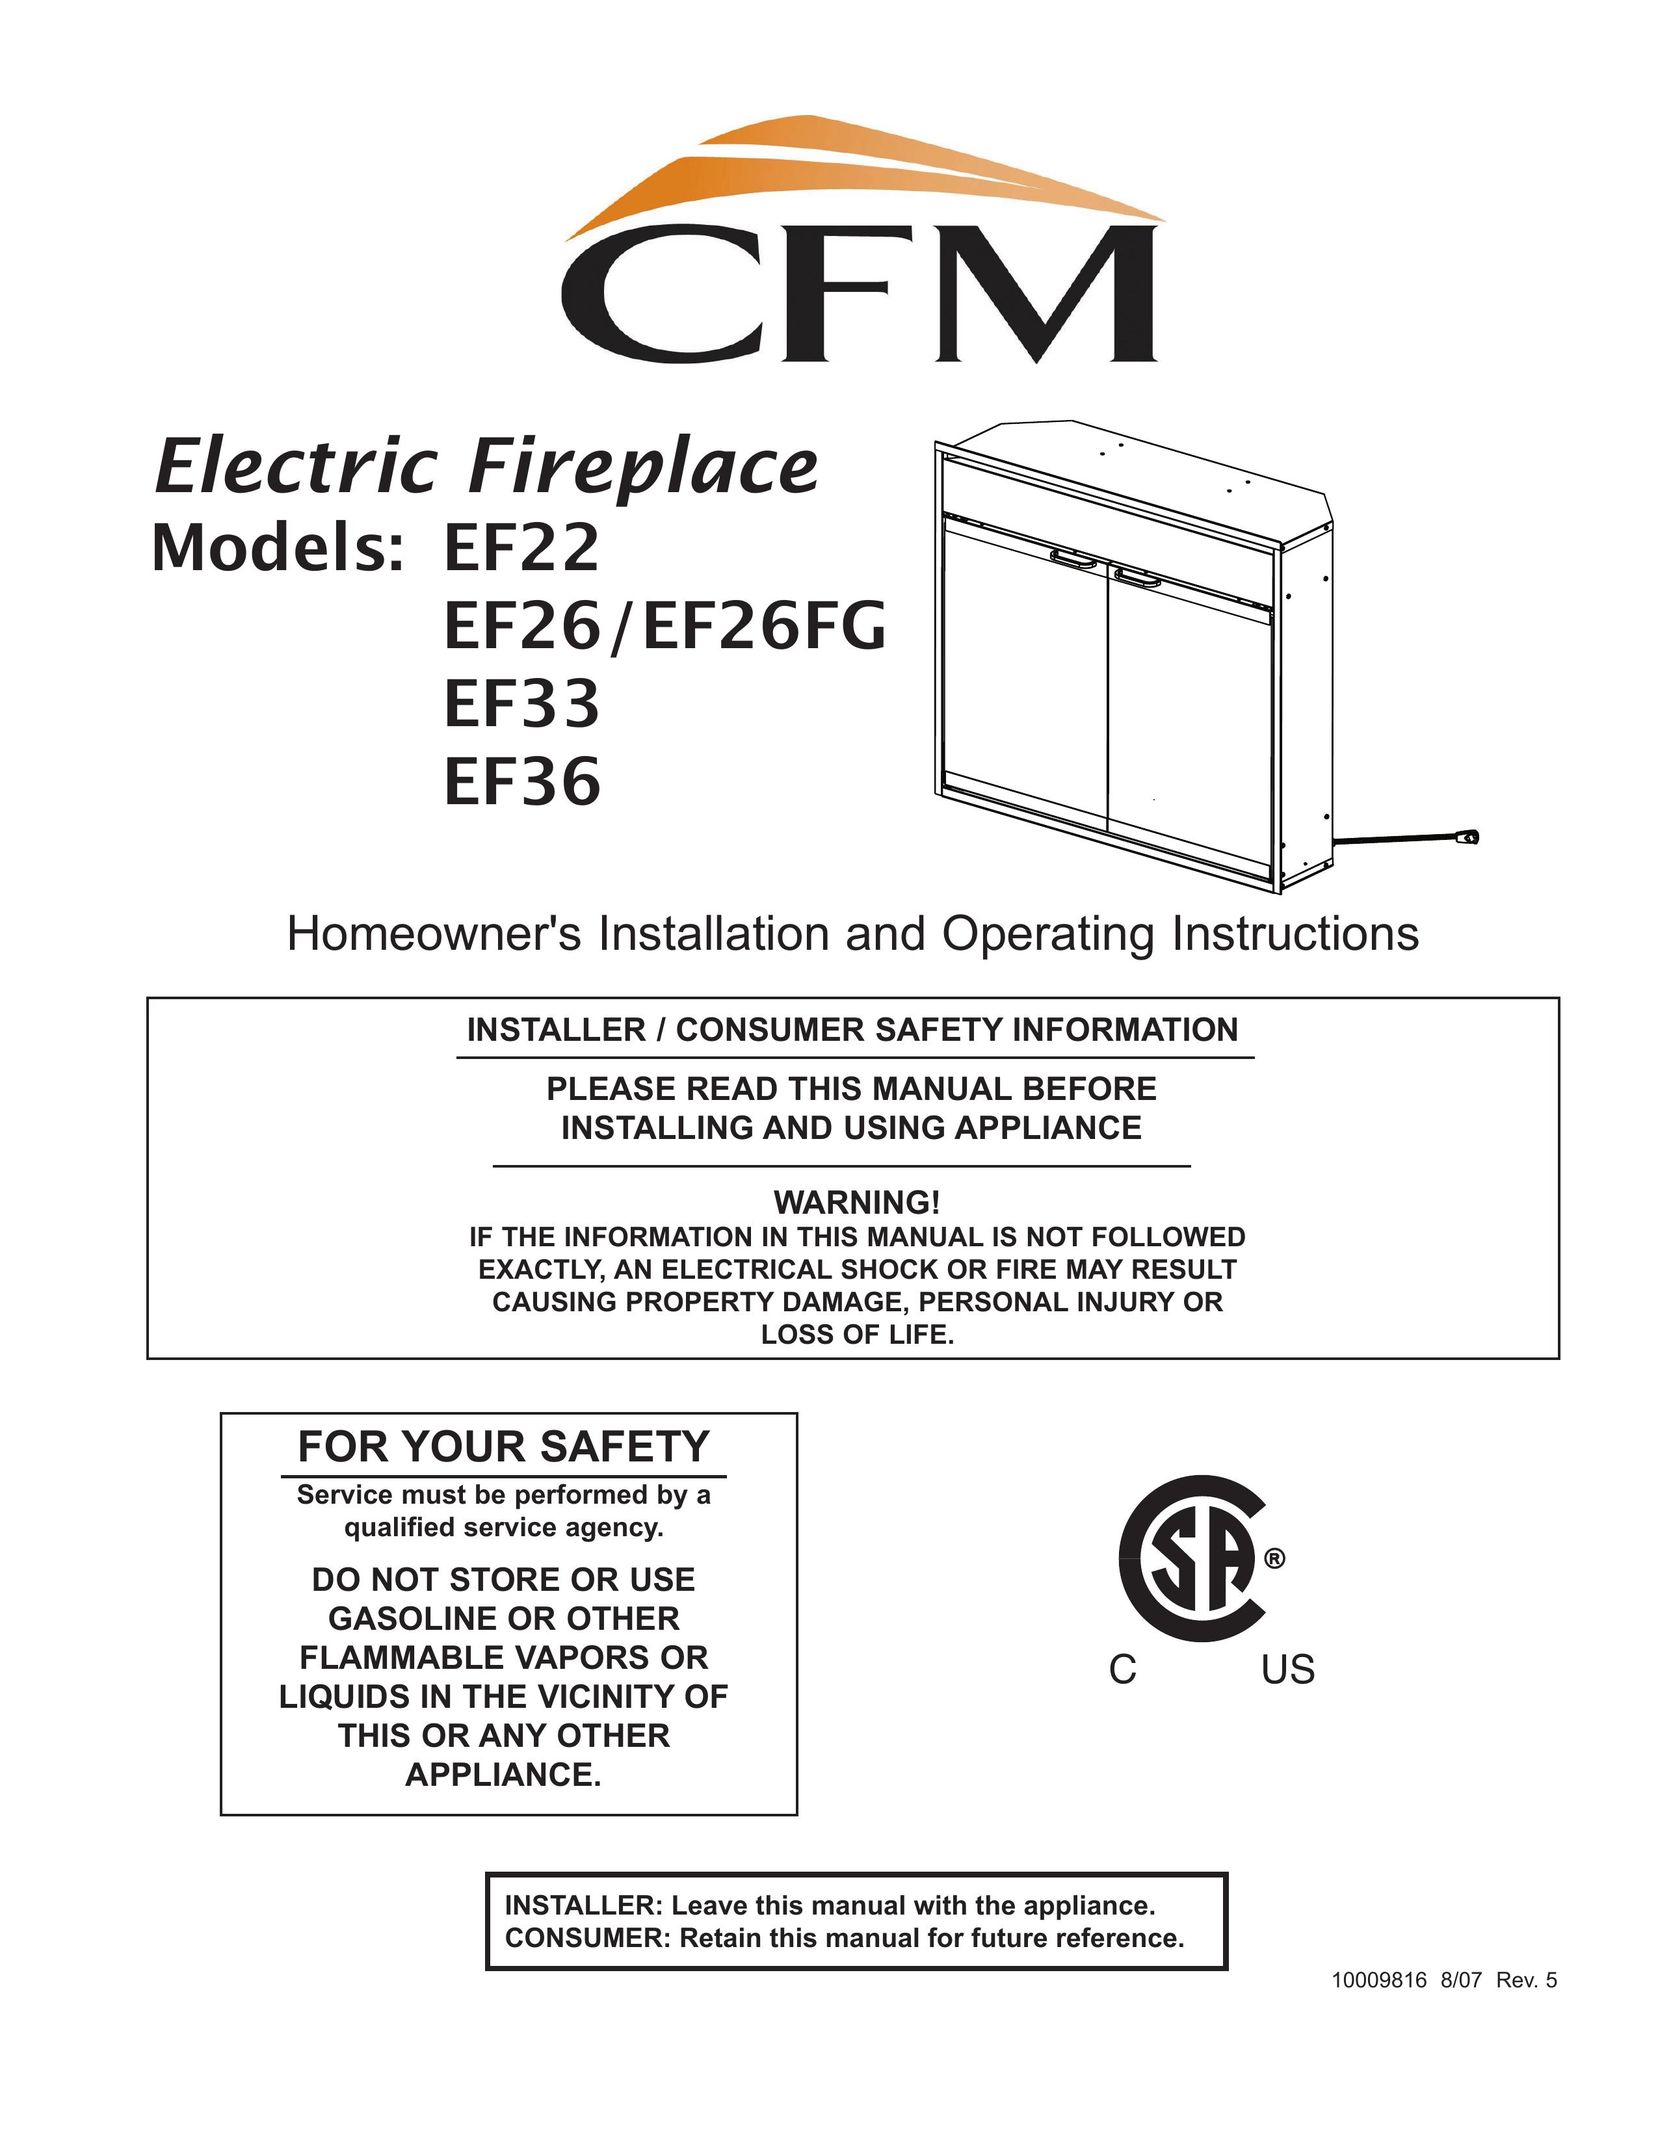 CFM Corporation EF26FG Indoor Fireplace User Manual